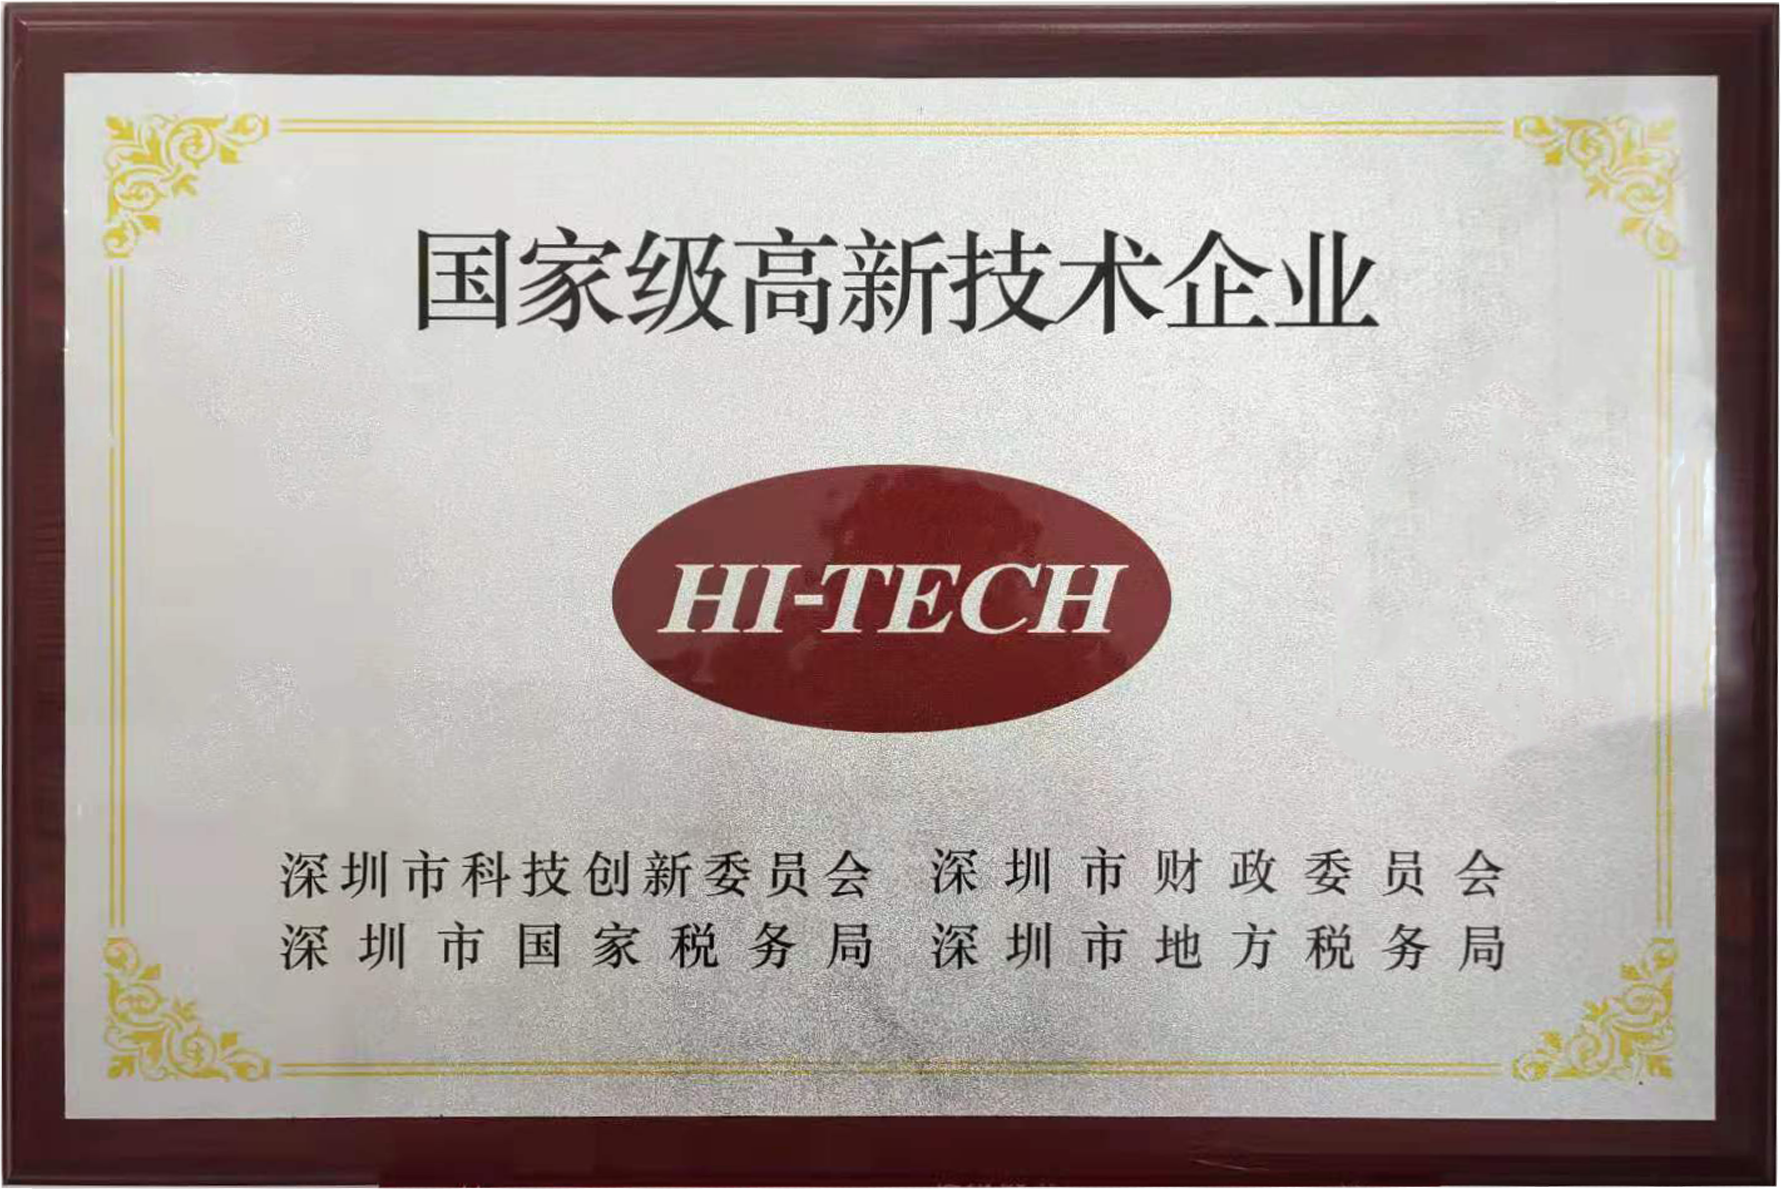 High-tech Enterprise Certificate